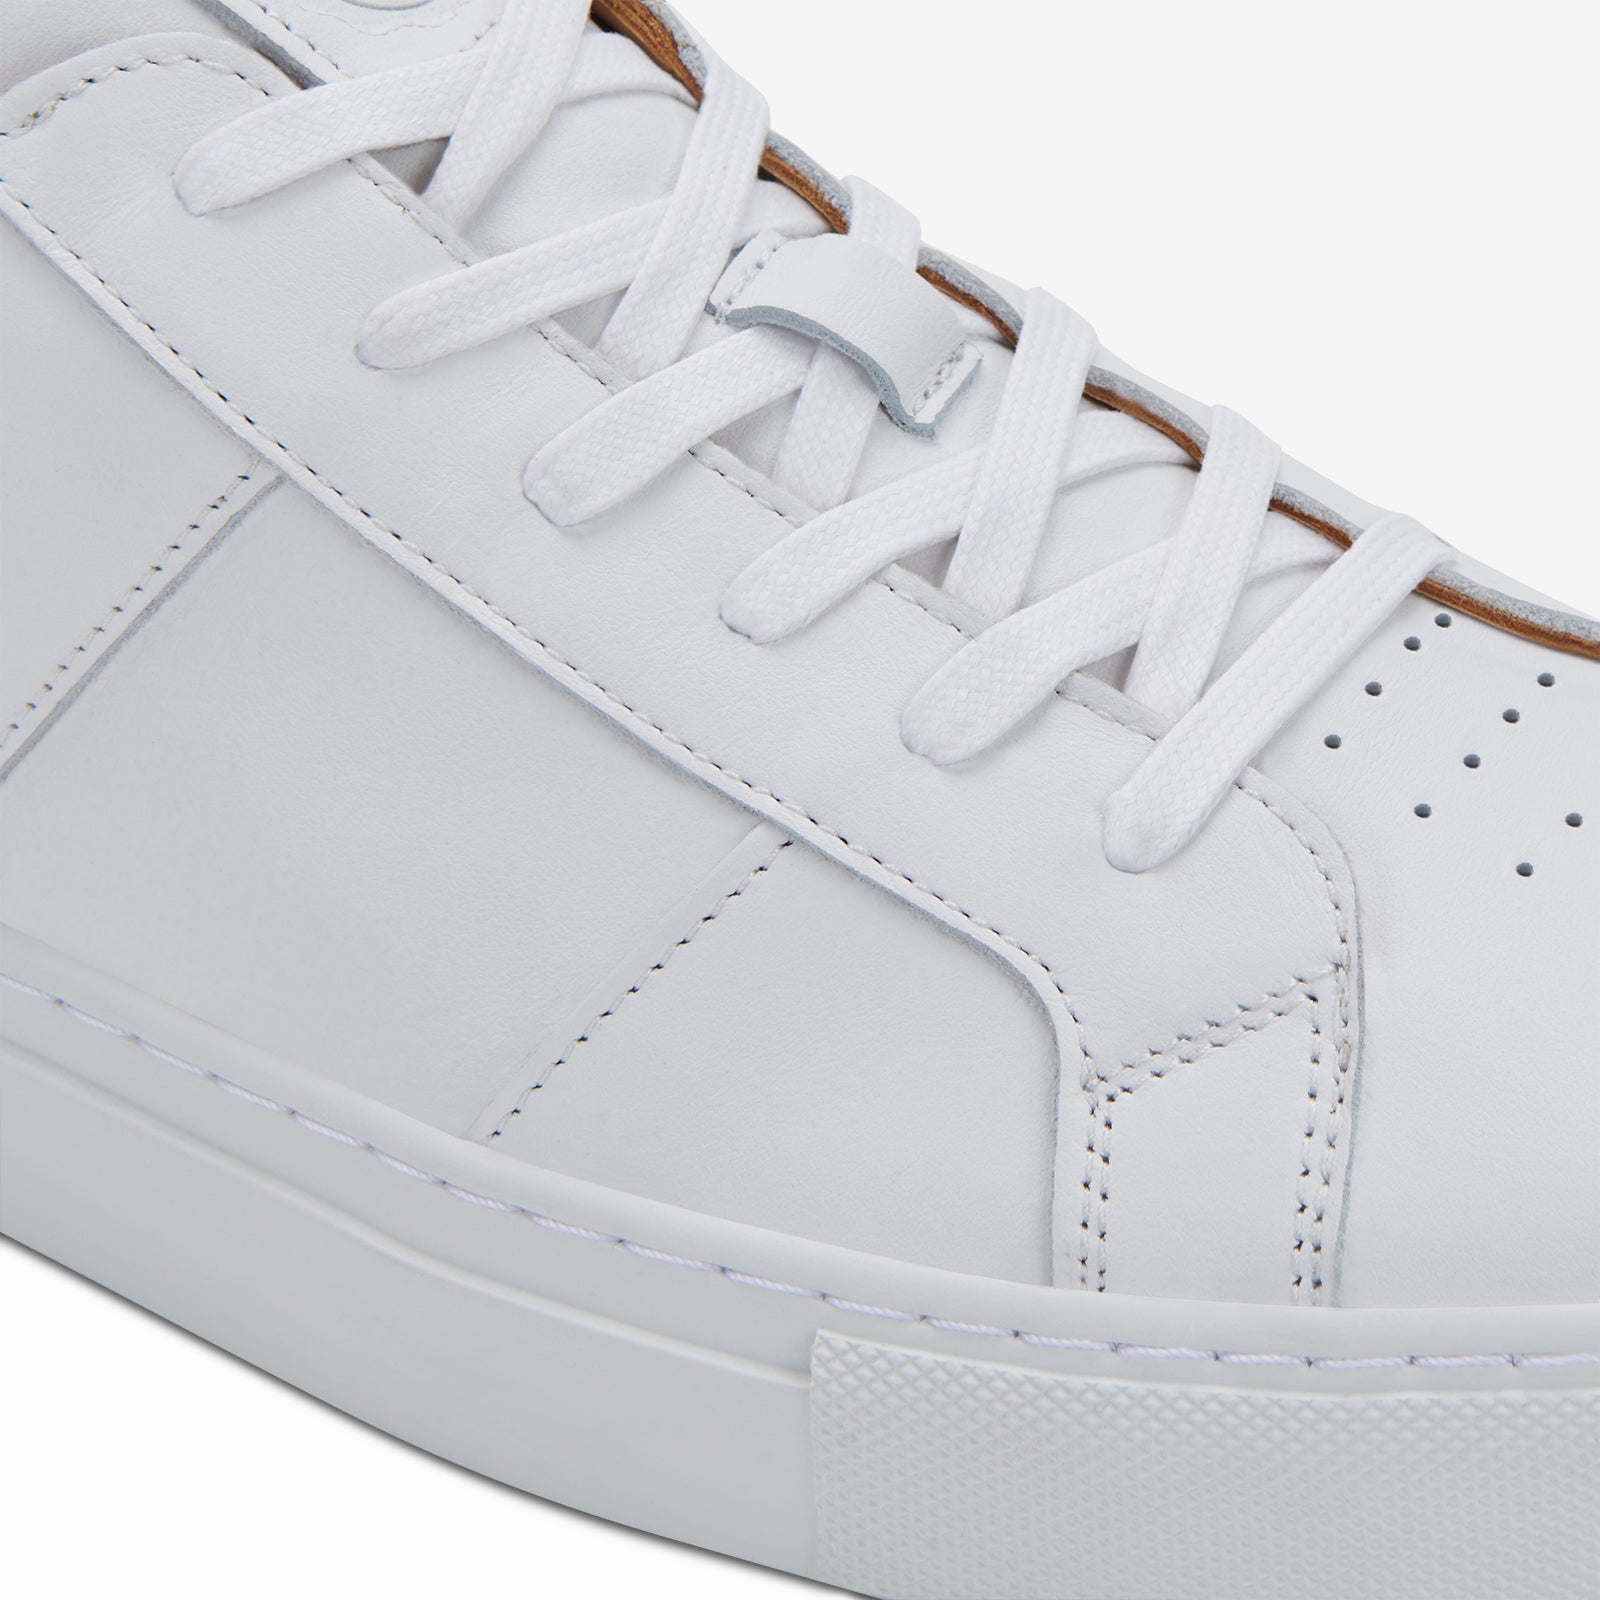 Cooperación temperamento paz Greats - The Royale - Blanco White Italian Leather - Men's Shoe – GREATS